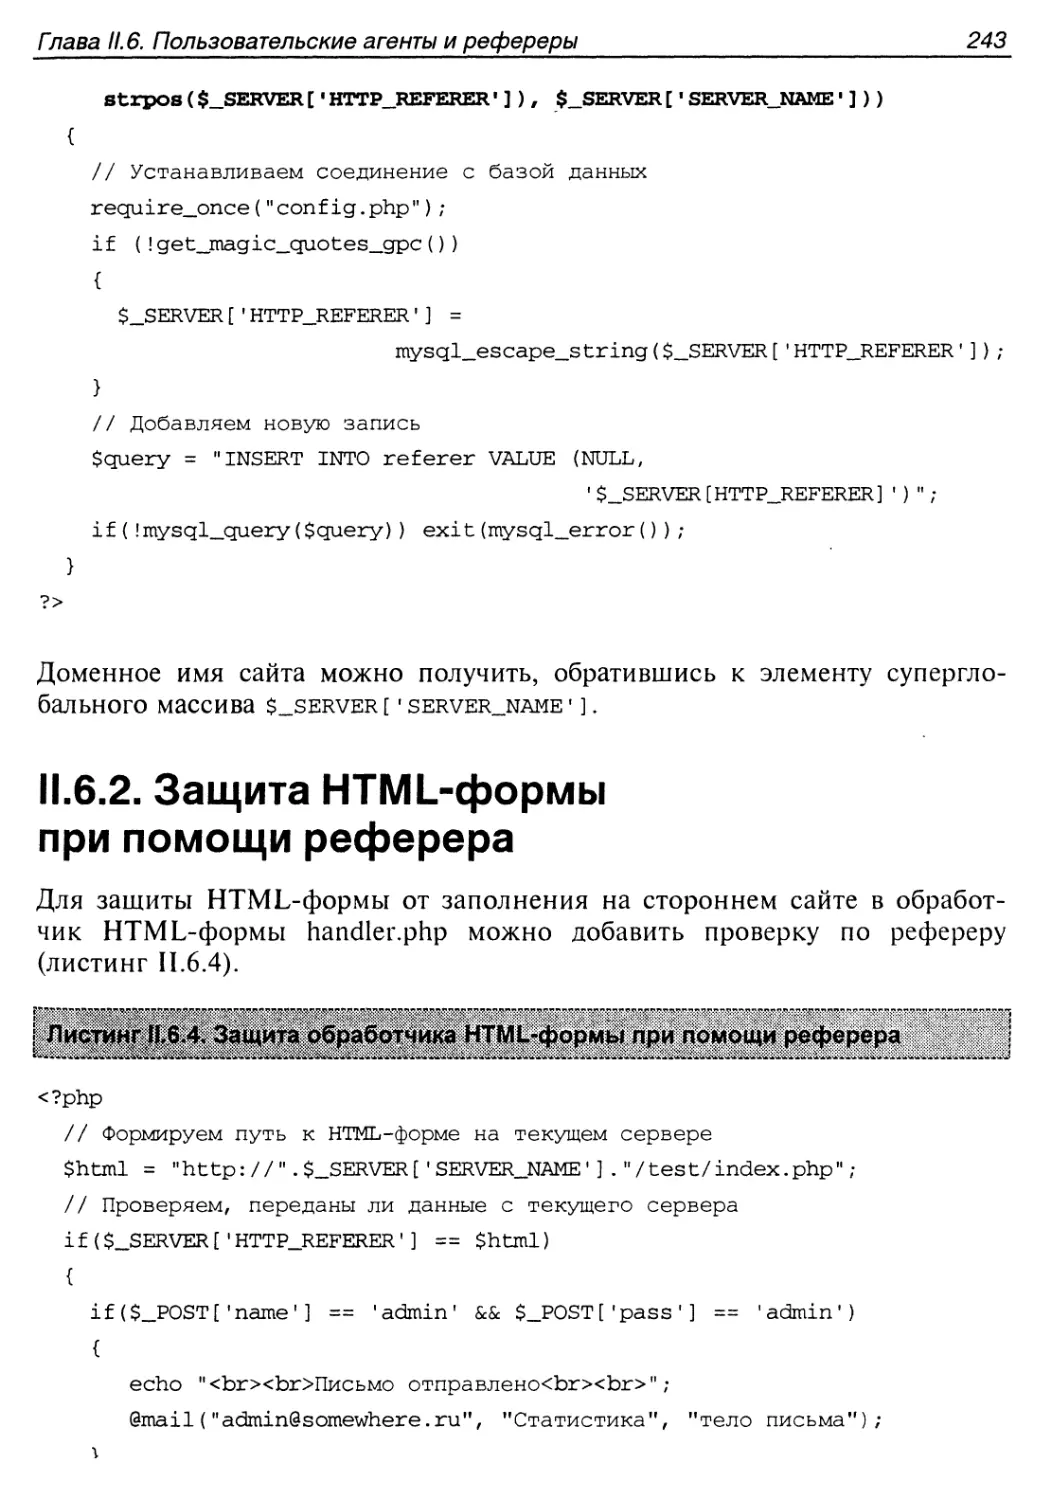 II.6.2. Защита HTML-формы при помощи реферера